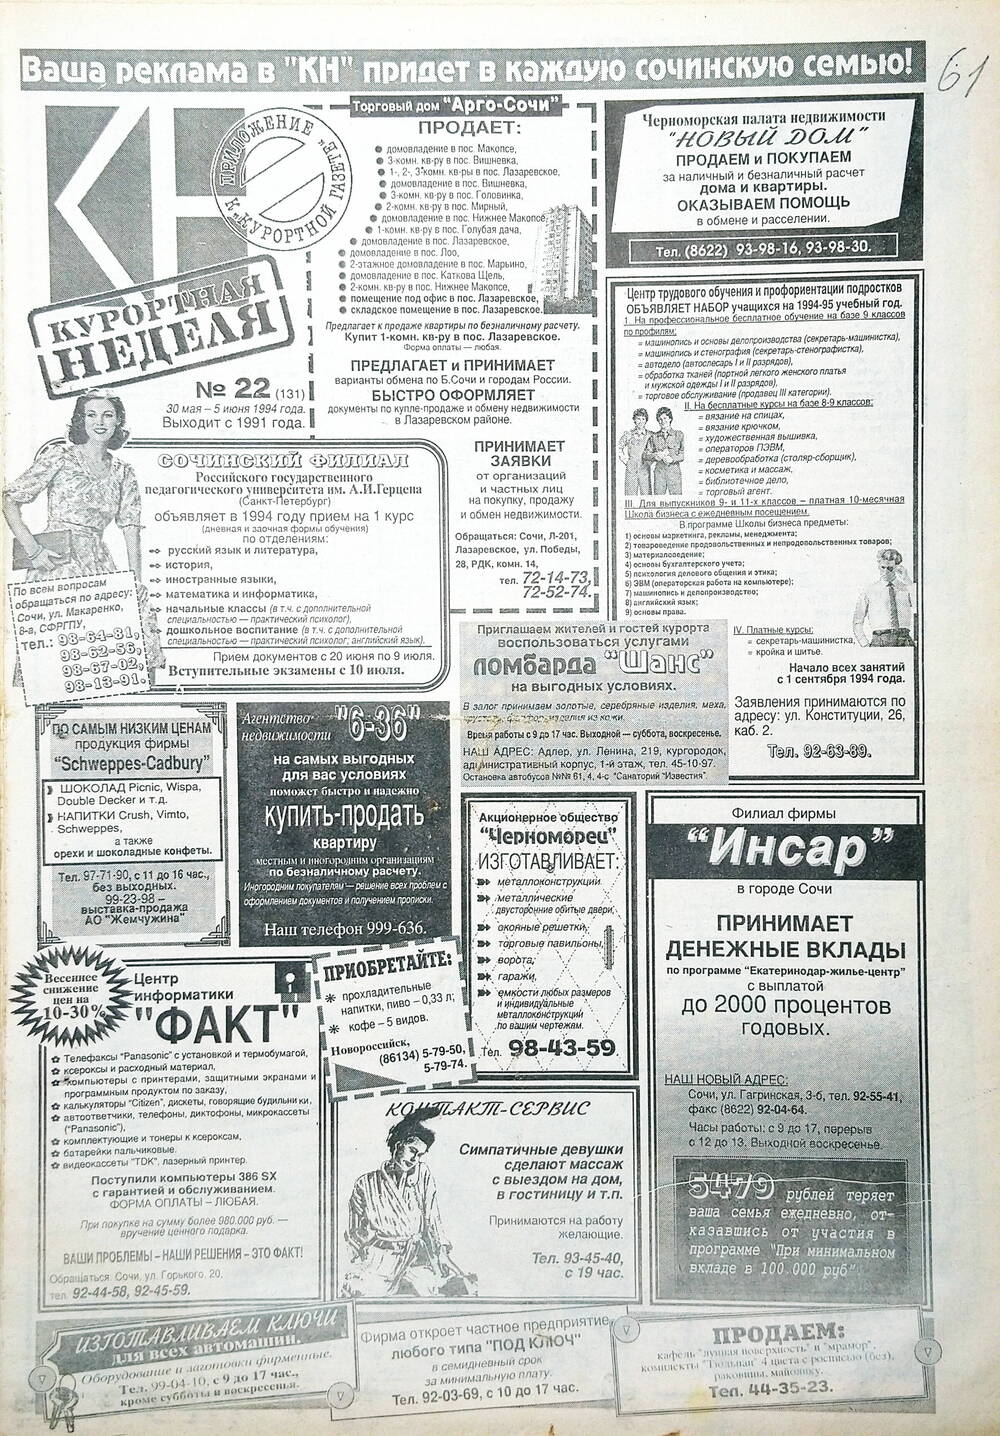 Газета еженедельная рекламно-информационная «Курортная неделя» № 22 (131), 30 мая - 5 июня 1994 г.